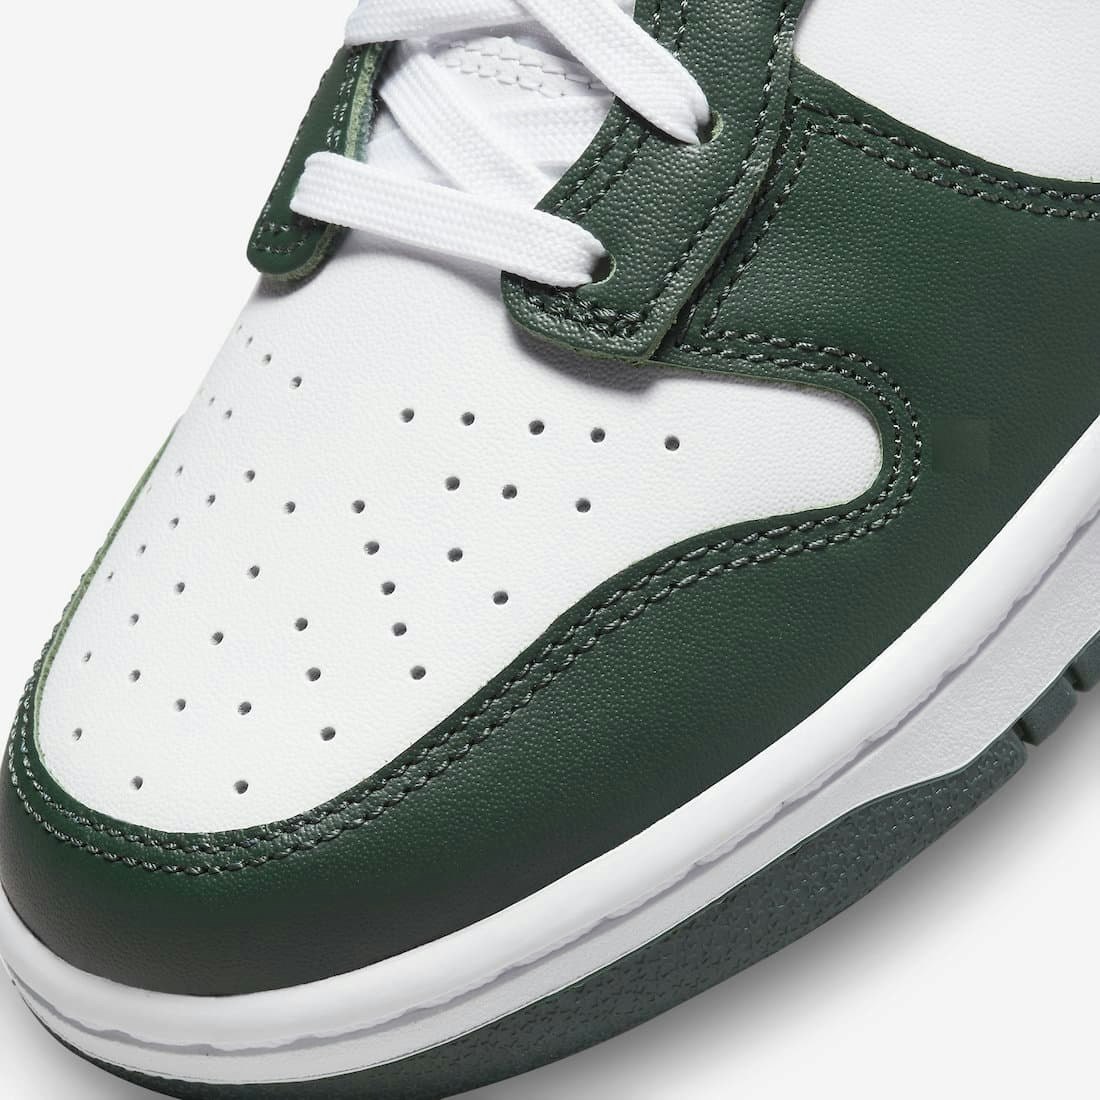 Nike Dunk High "Green&White"